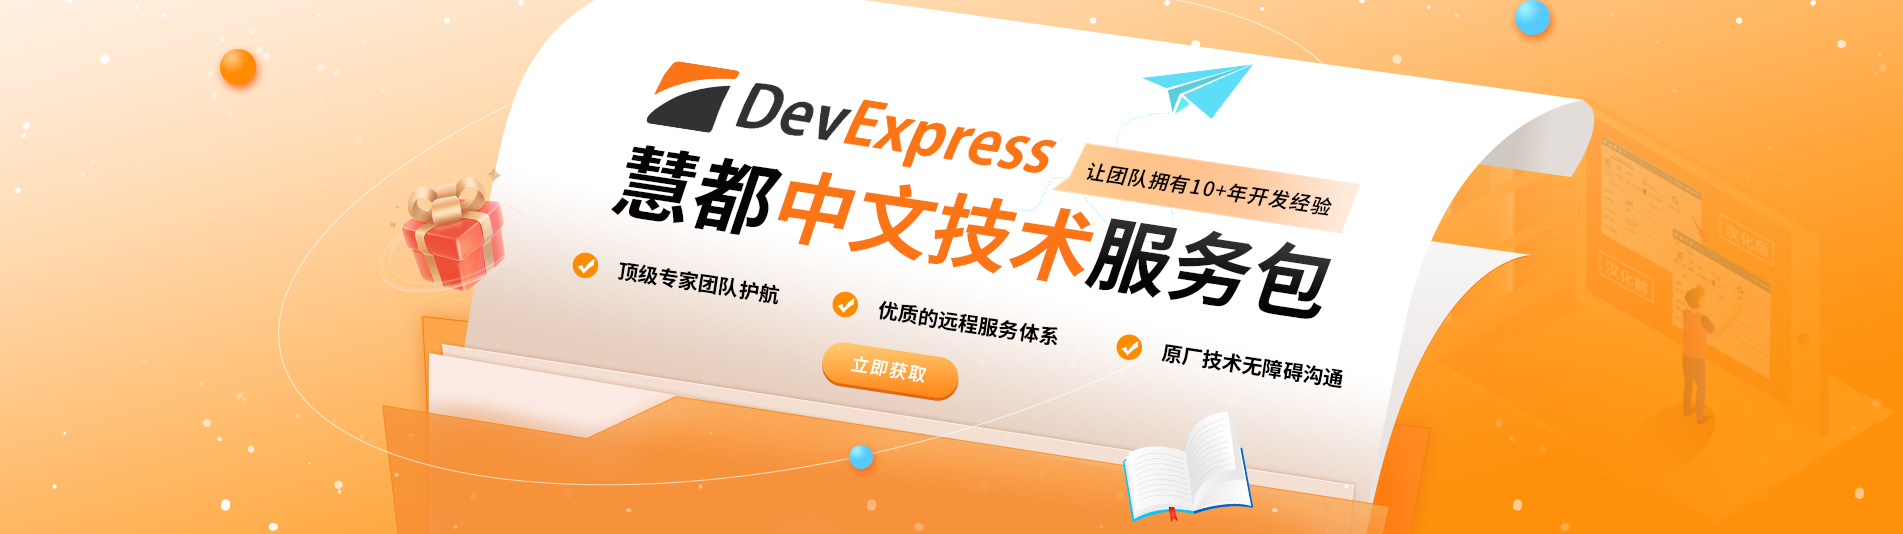 慧都DevExpress技术支持，聚力提升团队研发实力！